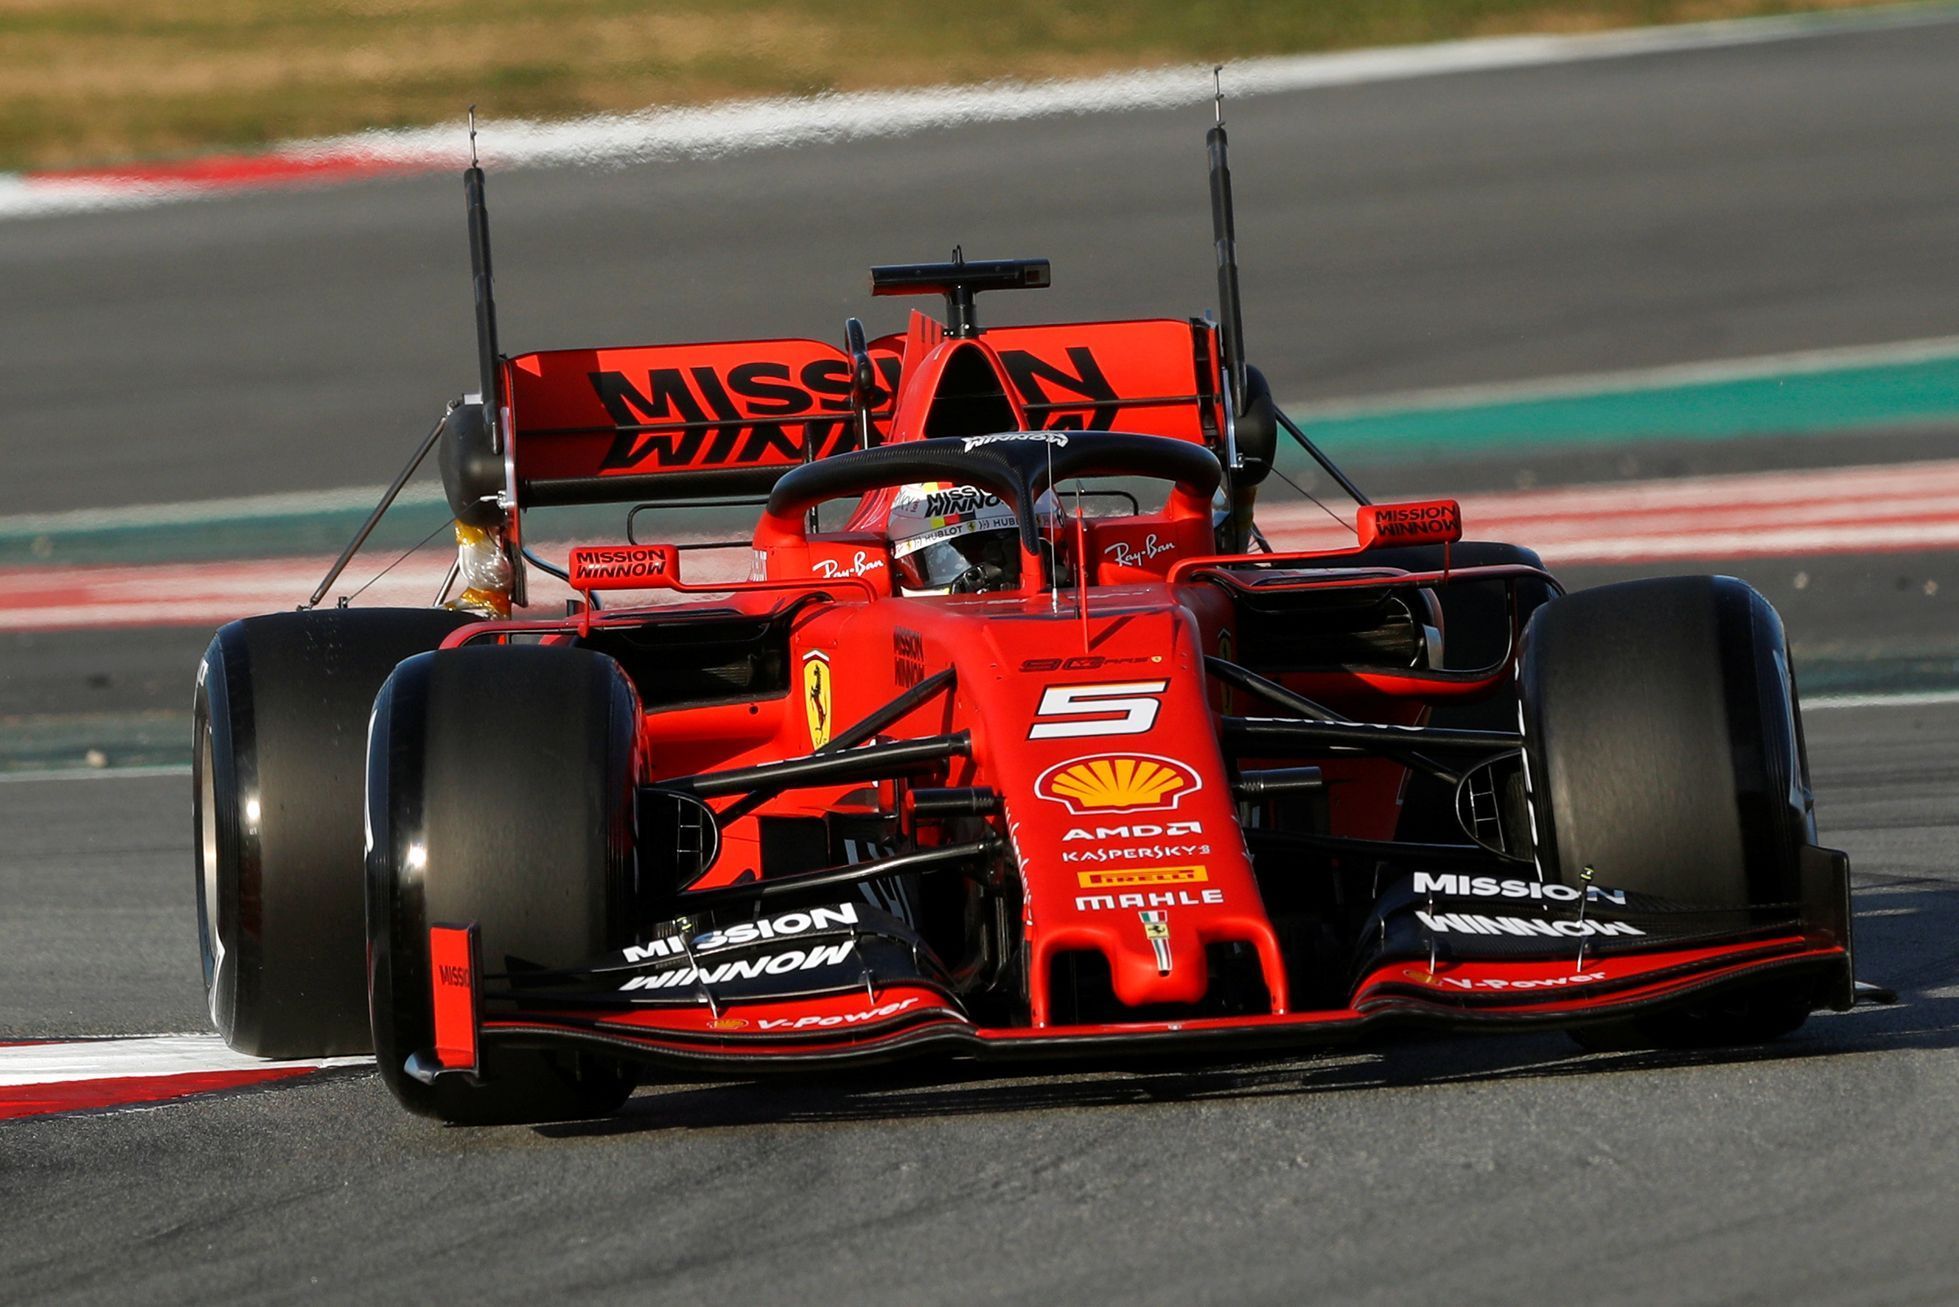 Testy F1 2019, Barcelona I: Sebastian Vettel, Ferrari